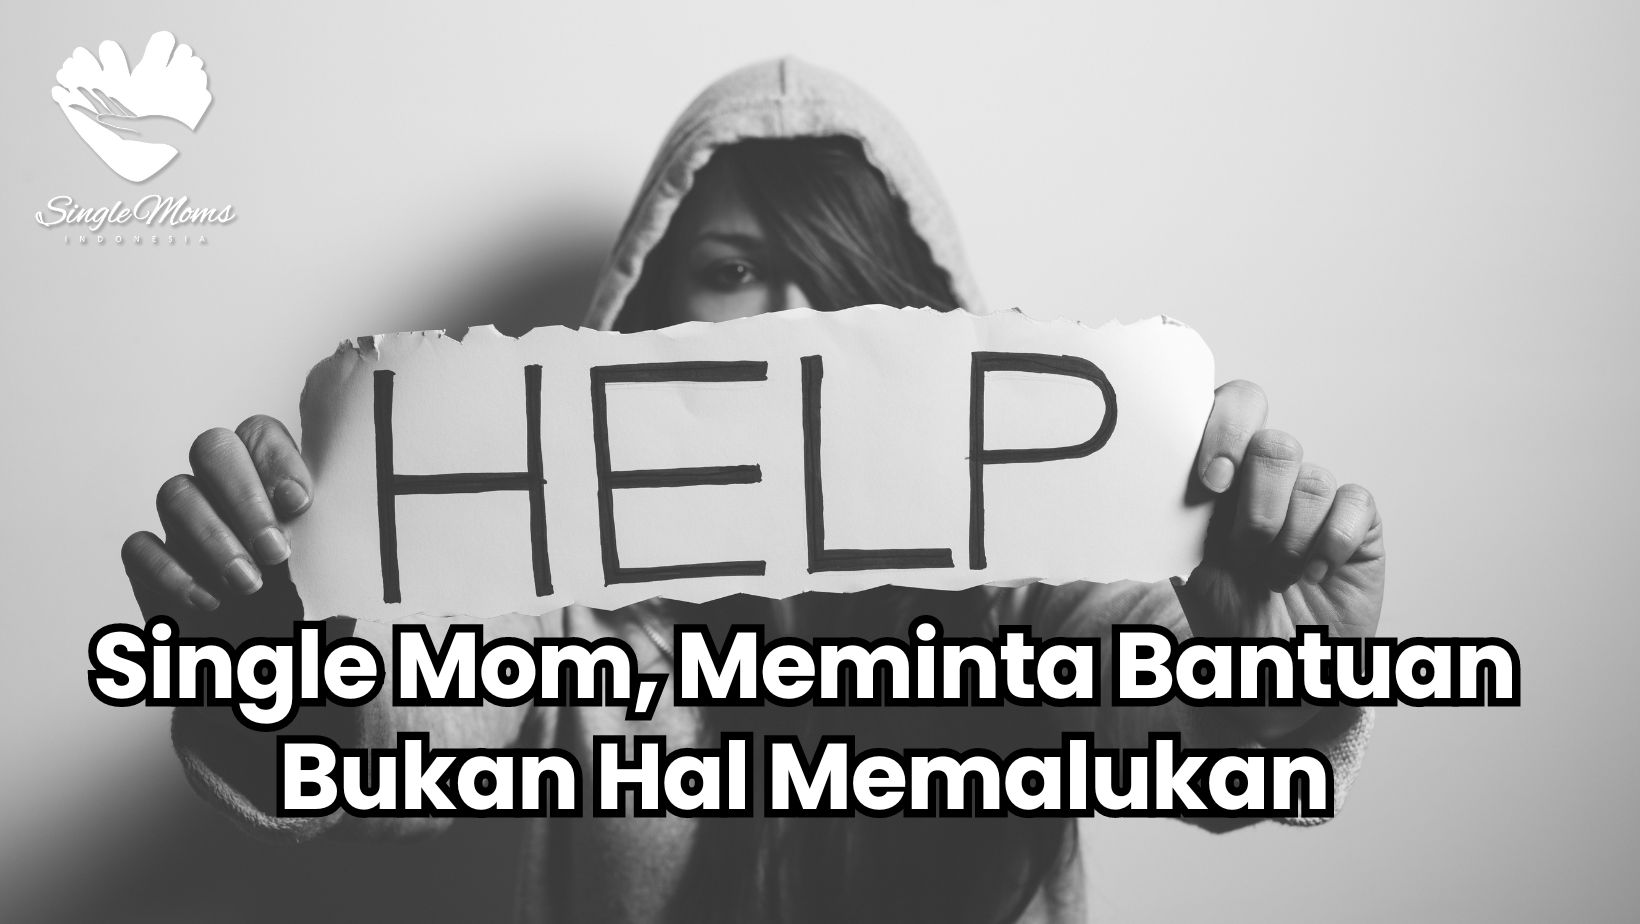 Single Mom, Meminta Bantuan Bukan Hal Memalukan